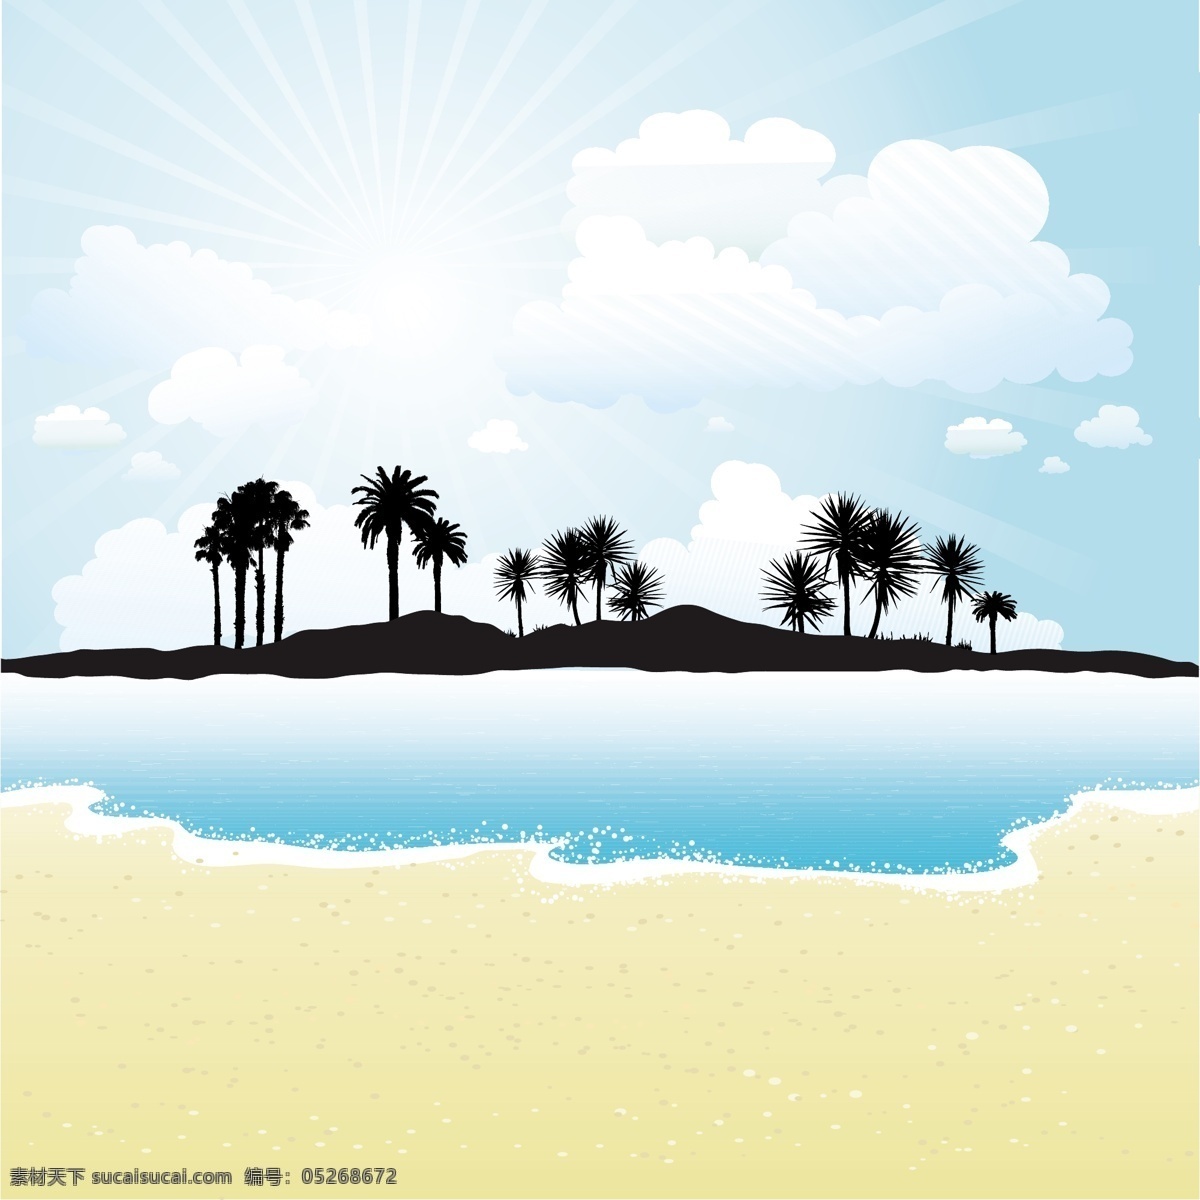 热带 岛屿 晴朗 天空 海滩 轮廓 背景 树木 抽象 夏天 自然 海洋 阳光 假日 剪影 棕榈树 棕榈 度假 沙滩 季节